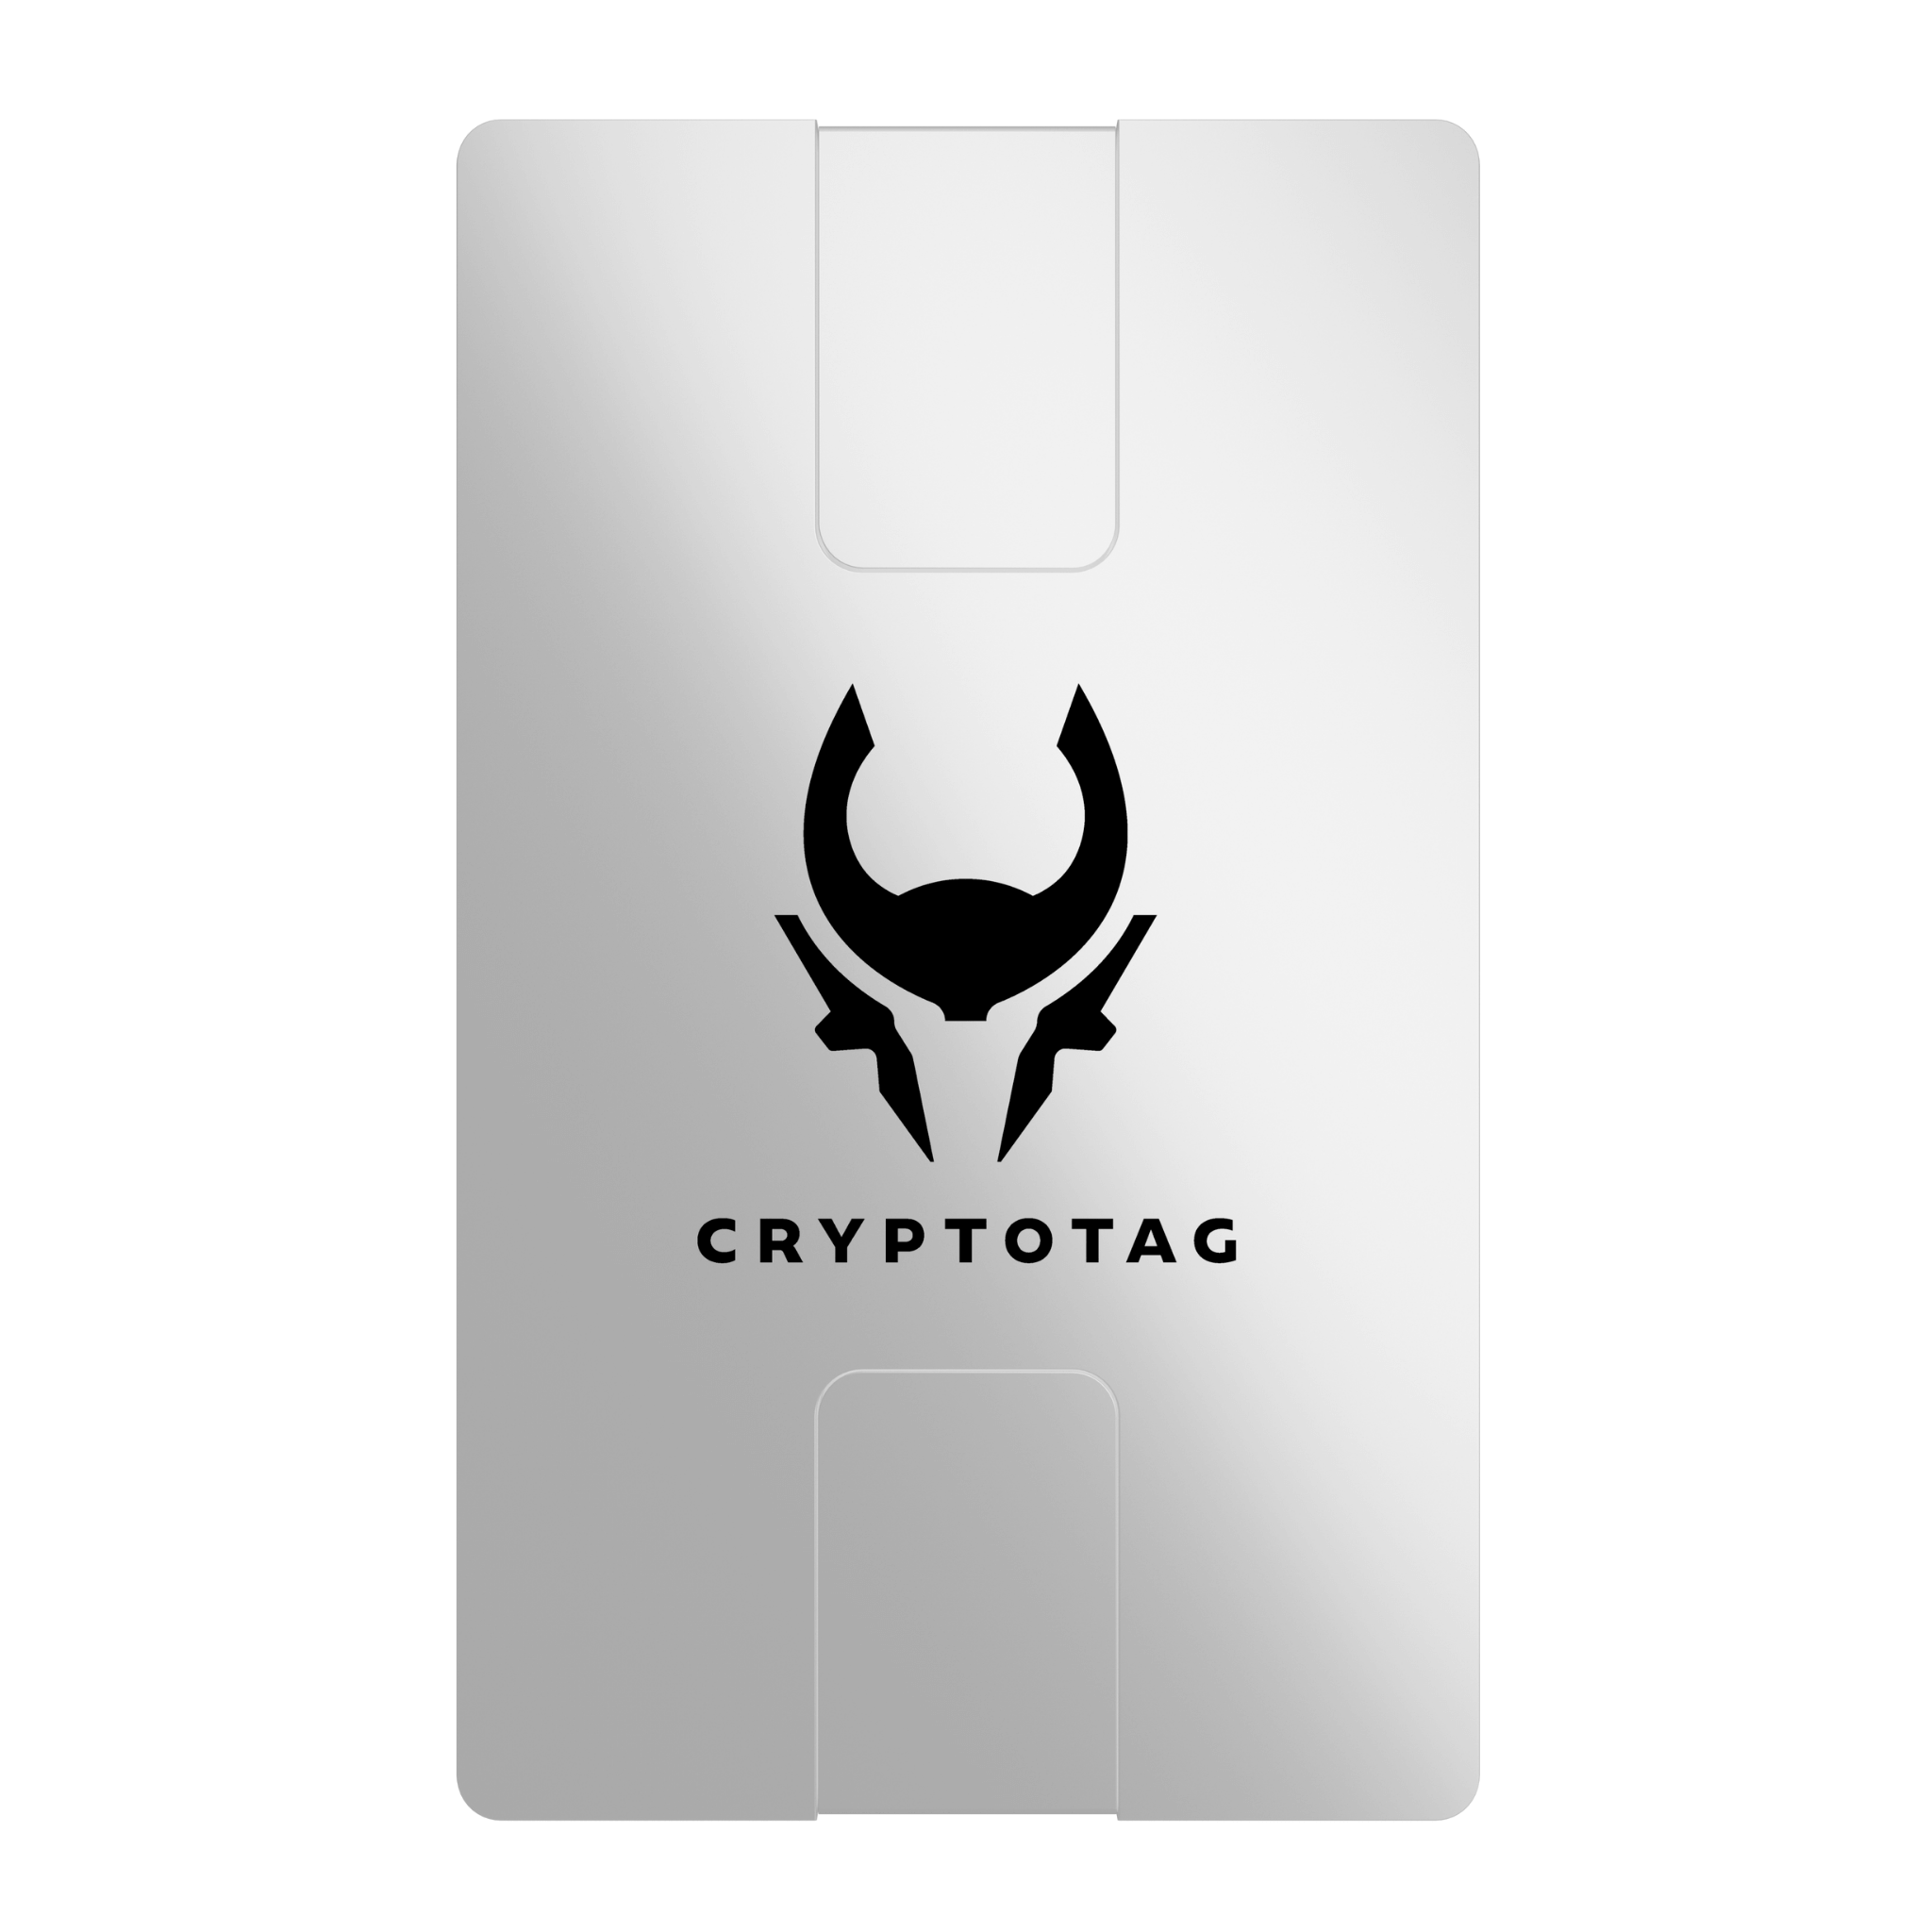 Cryptotag Zeus Starter Kit Seed Phrase Storage Titanium Plates With Cryptotag Logo